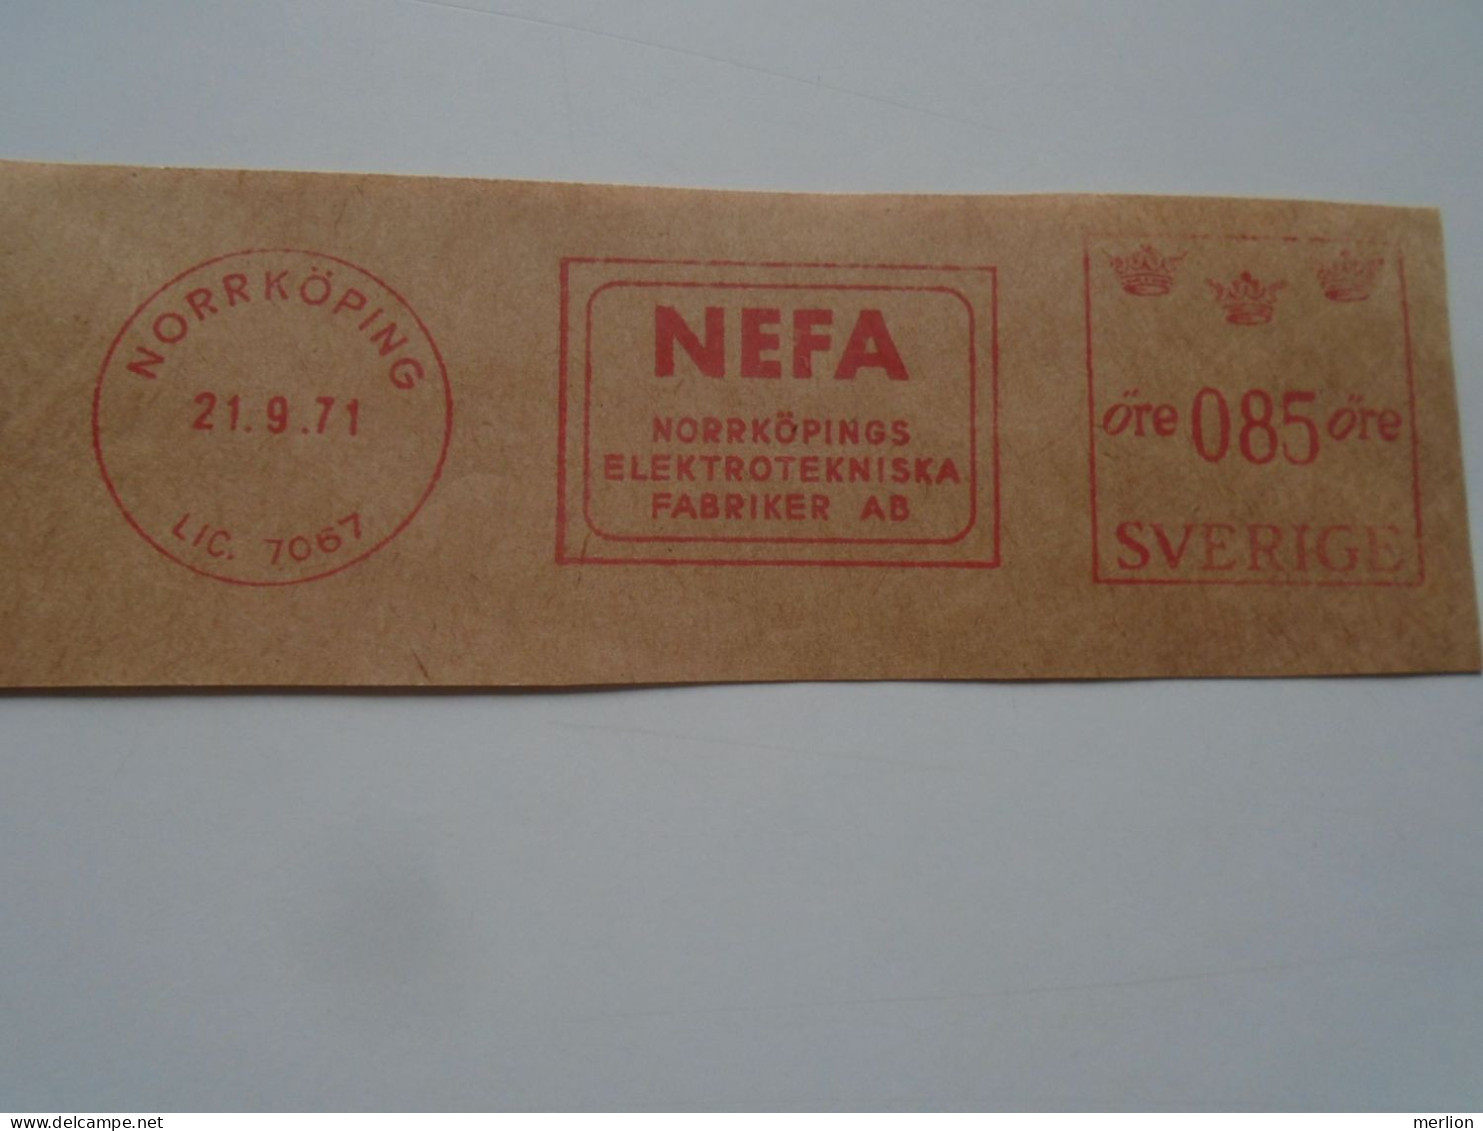 D200356 Red  Meter Stamp Cut- EMA - Freistempel  -1971 NEFA  -Sweden NORRKÖPING -Electro - Machine Labels [ATM]